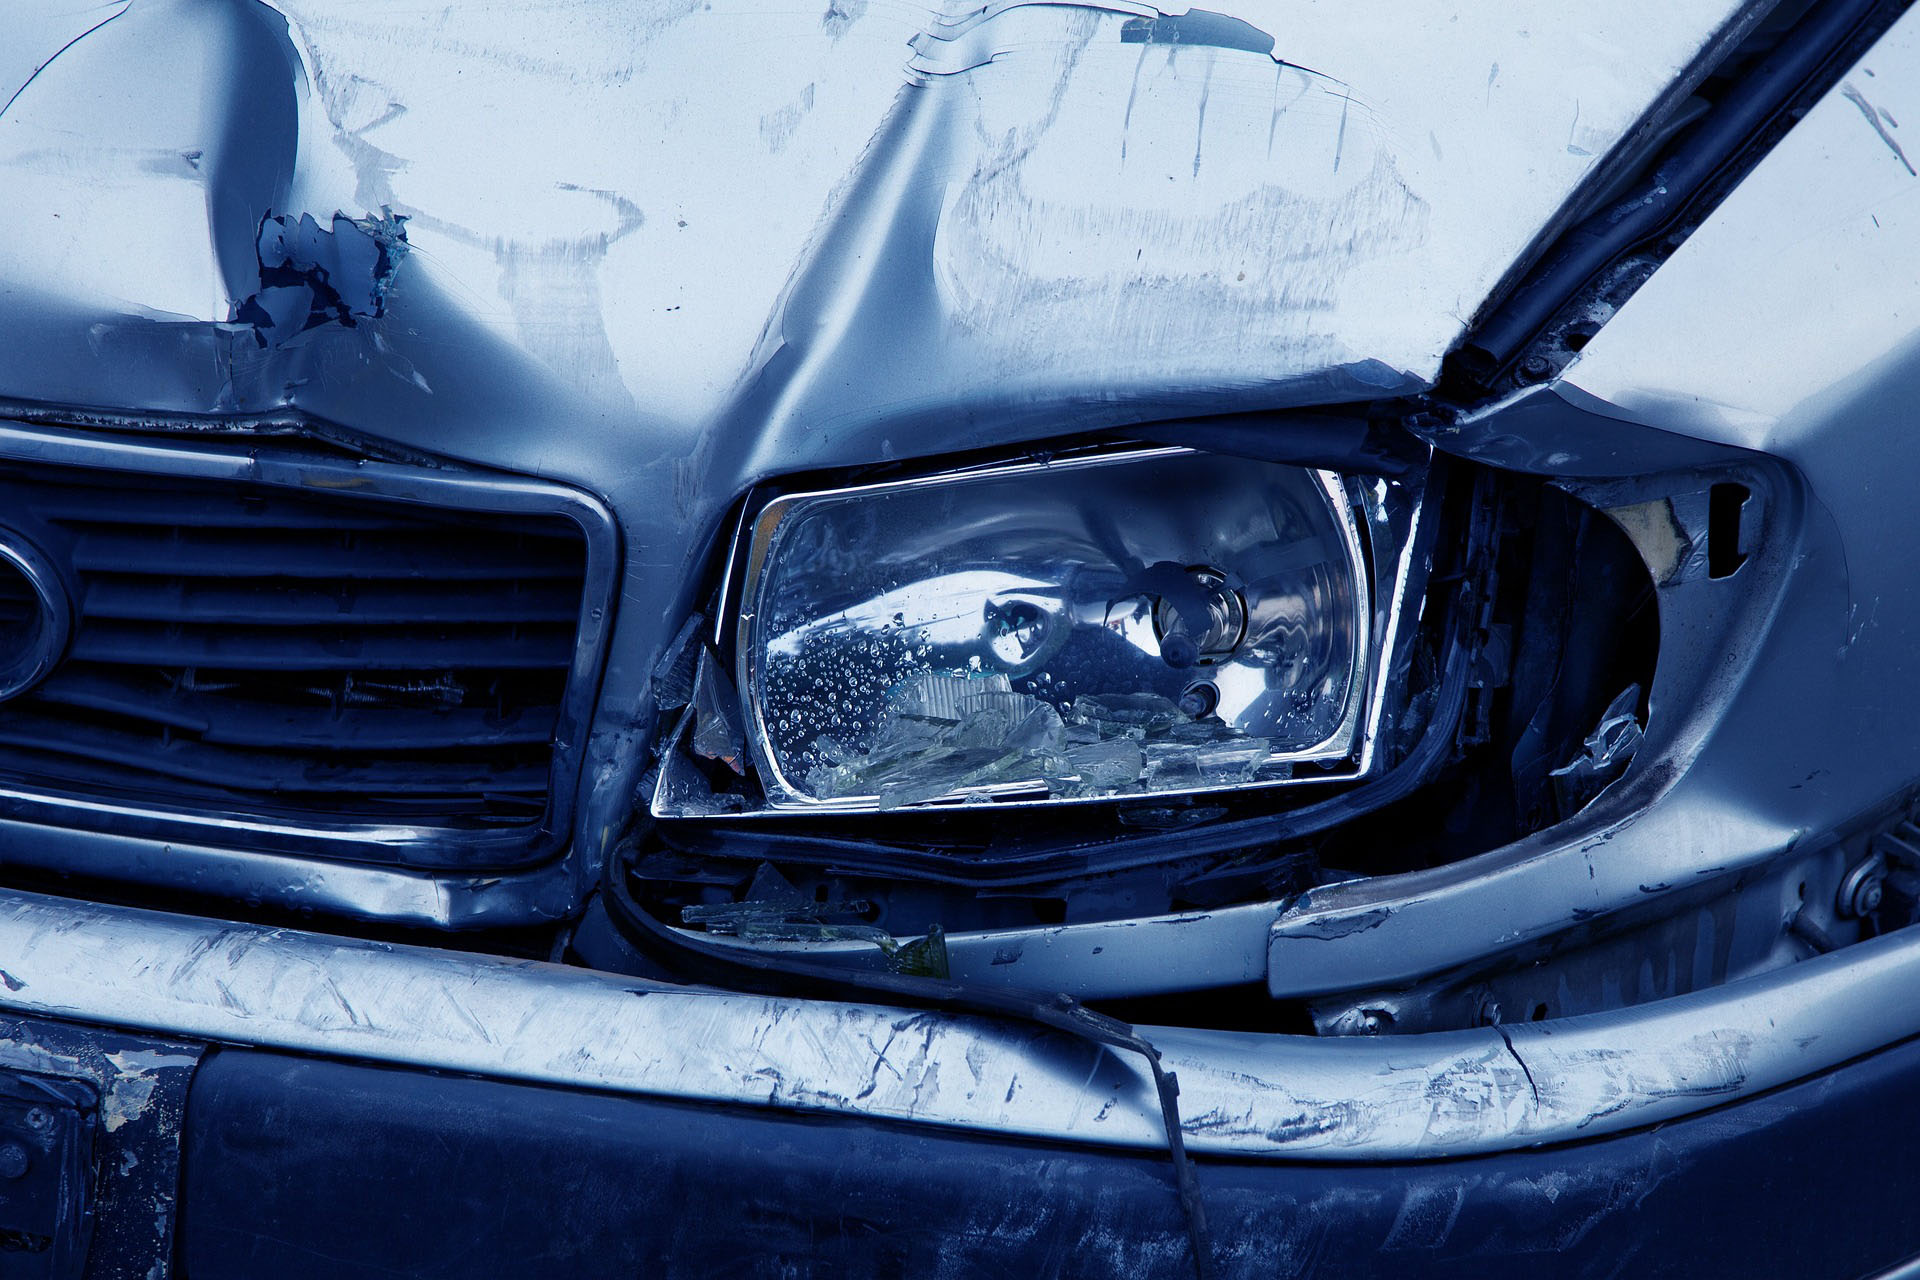 Une jeune française est décédée dans un accident de voiture. La gendarmerie enquête. image d'illustration | © Pixabay